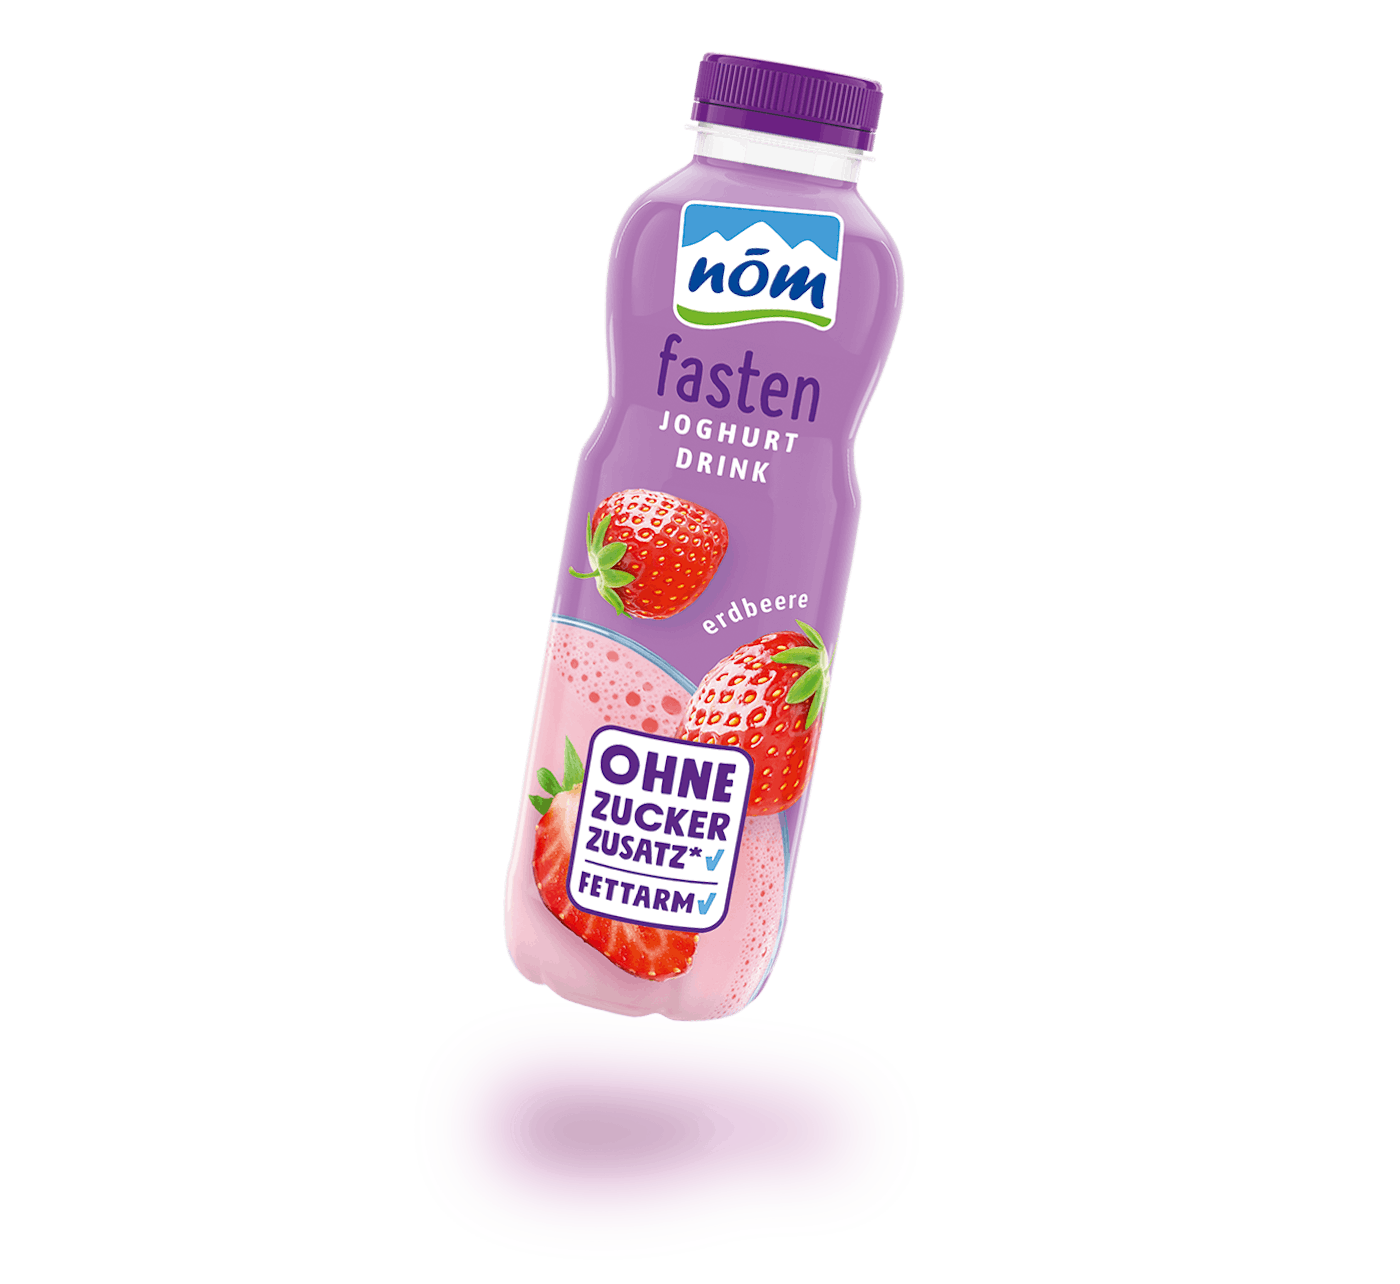 NÖM fasten Joghurtdrink Erdbeere in der 500 g Flasche